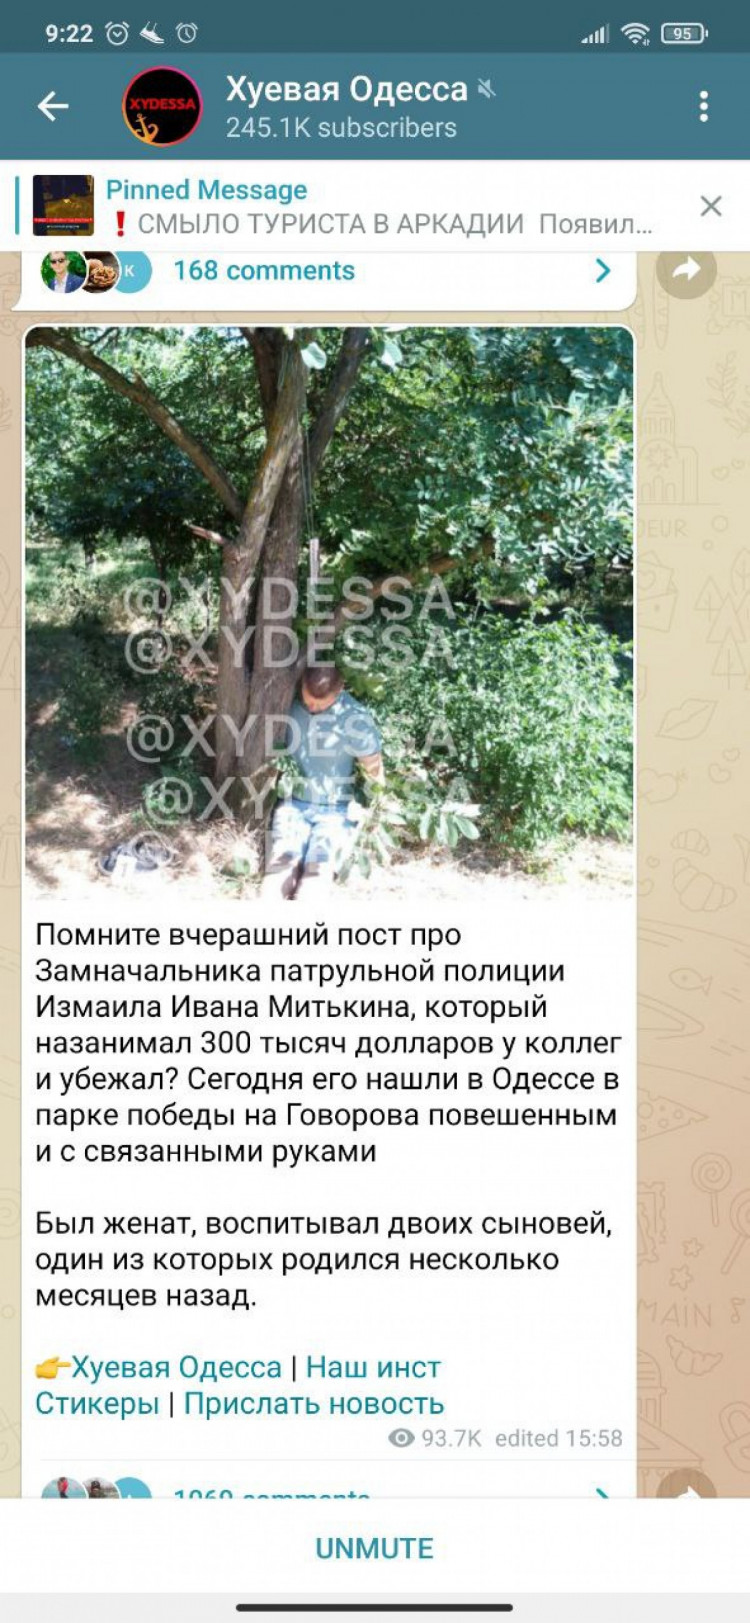 В одном из одесских парков обнаружили тело чиновника патрульной полиции